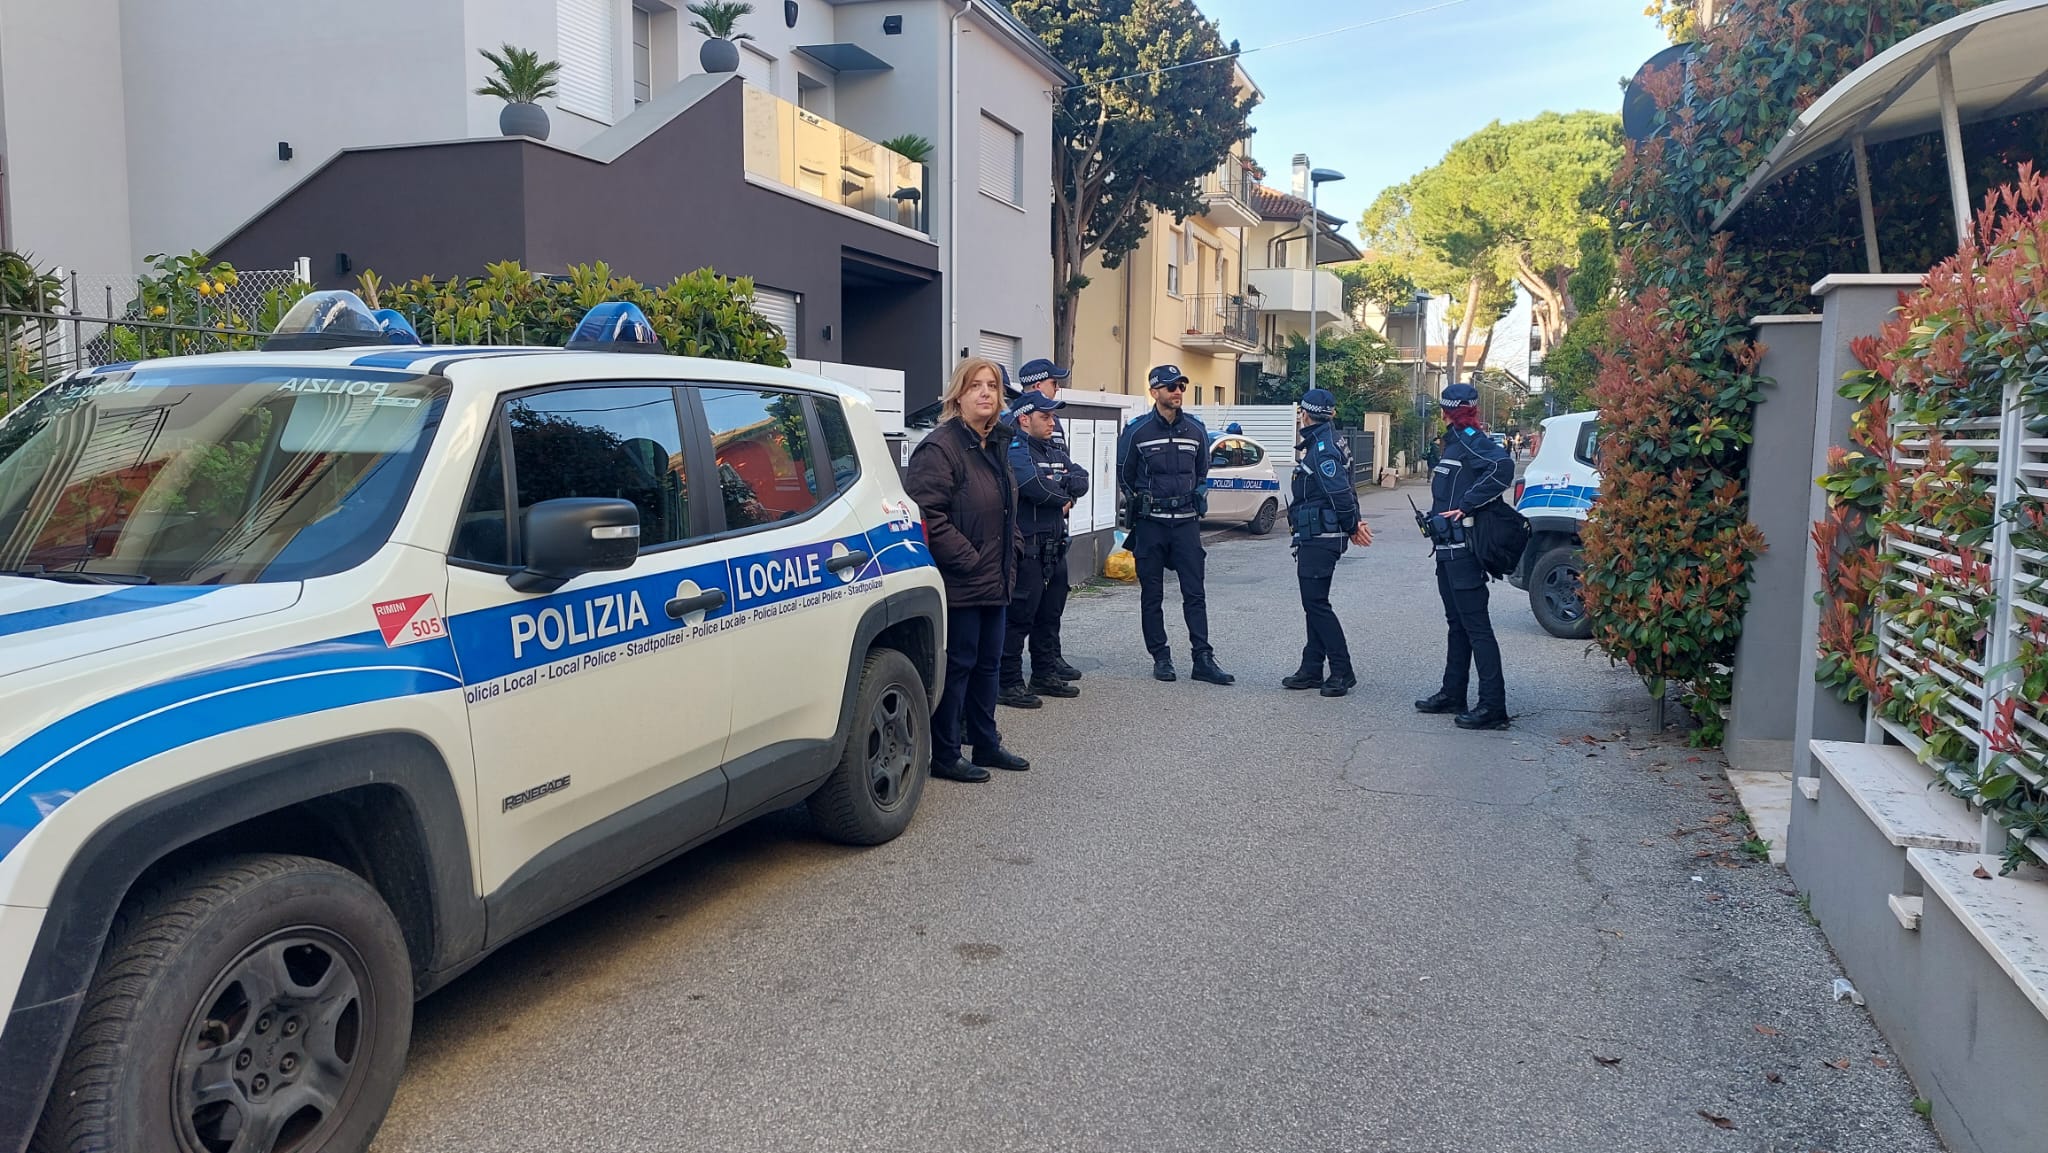 Attività di prostituzione in un residence di Rimini, scatta il sequestro